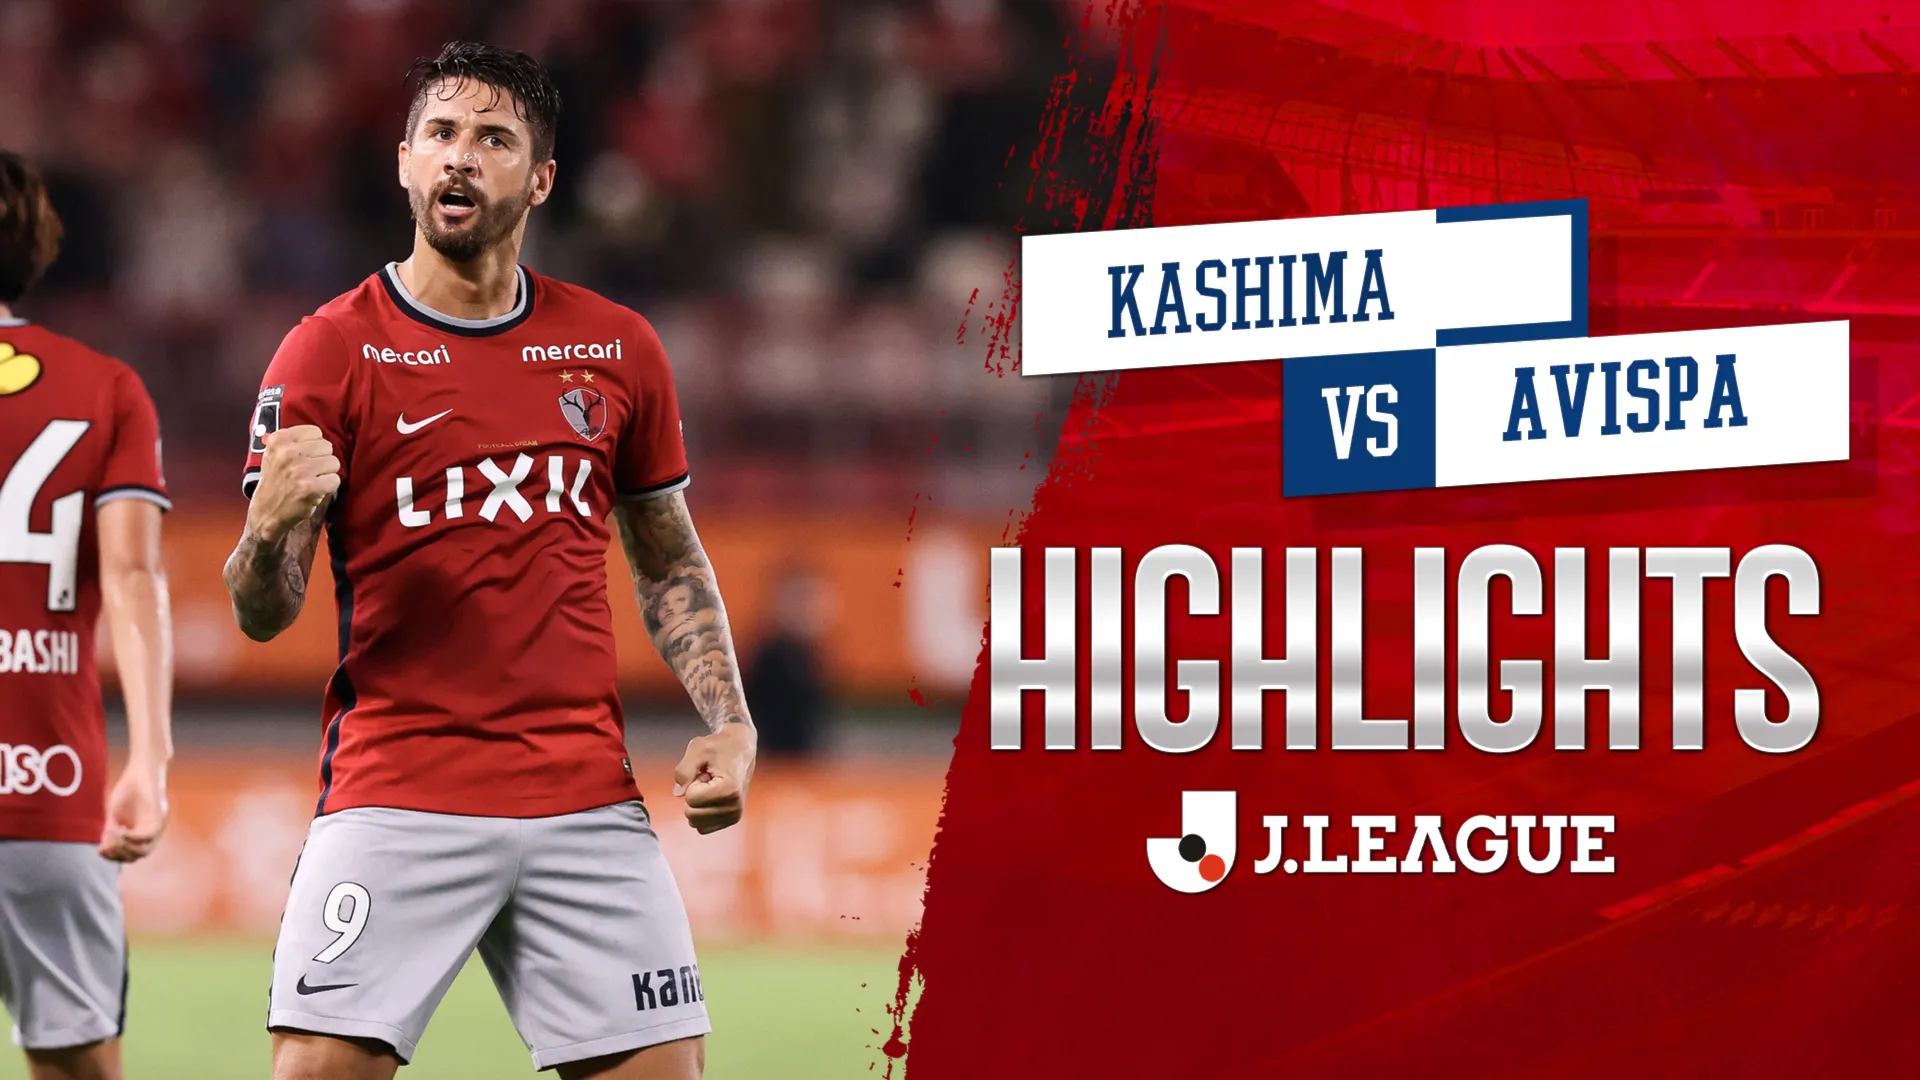 Highlights Kashima - Avispa (Vòng 25 - VĐQG Nhật Bản 2022)